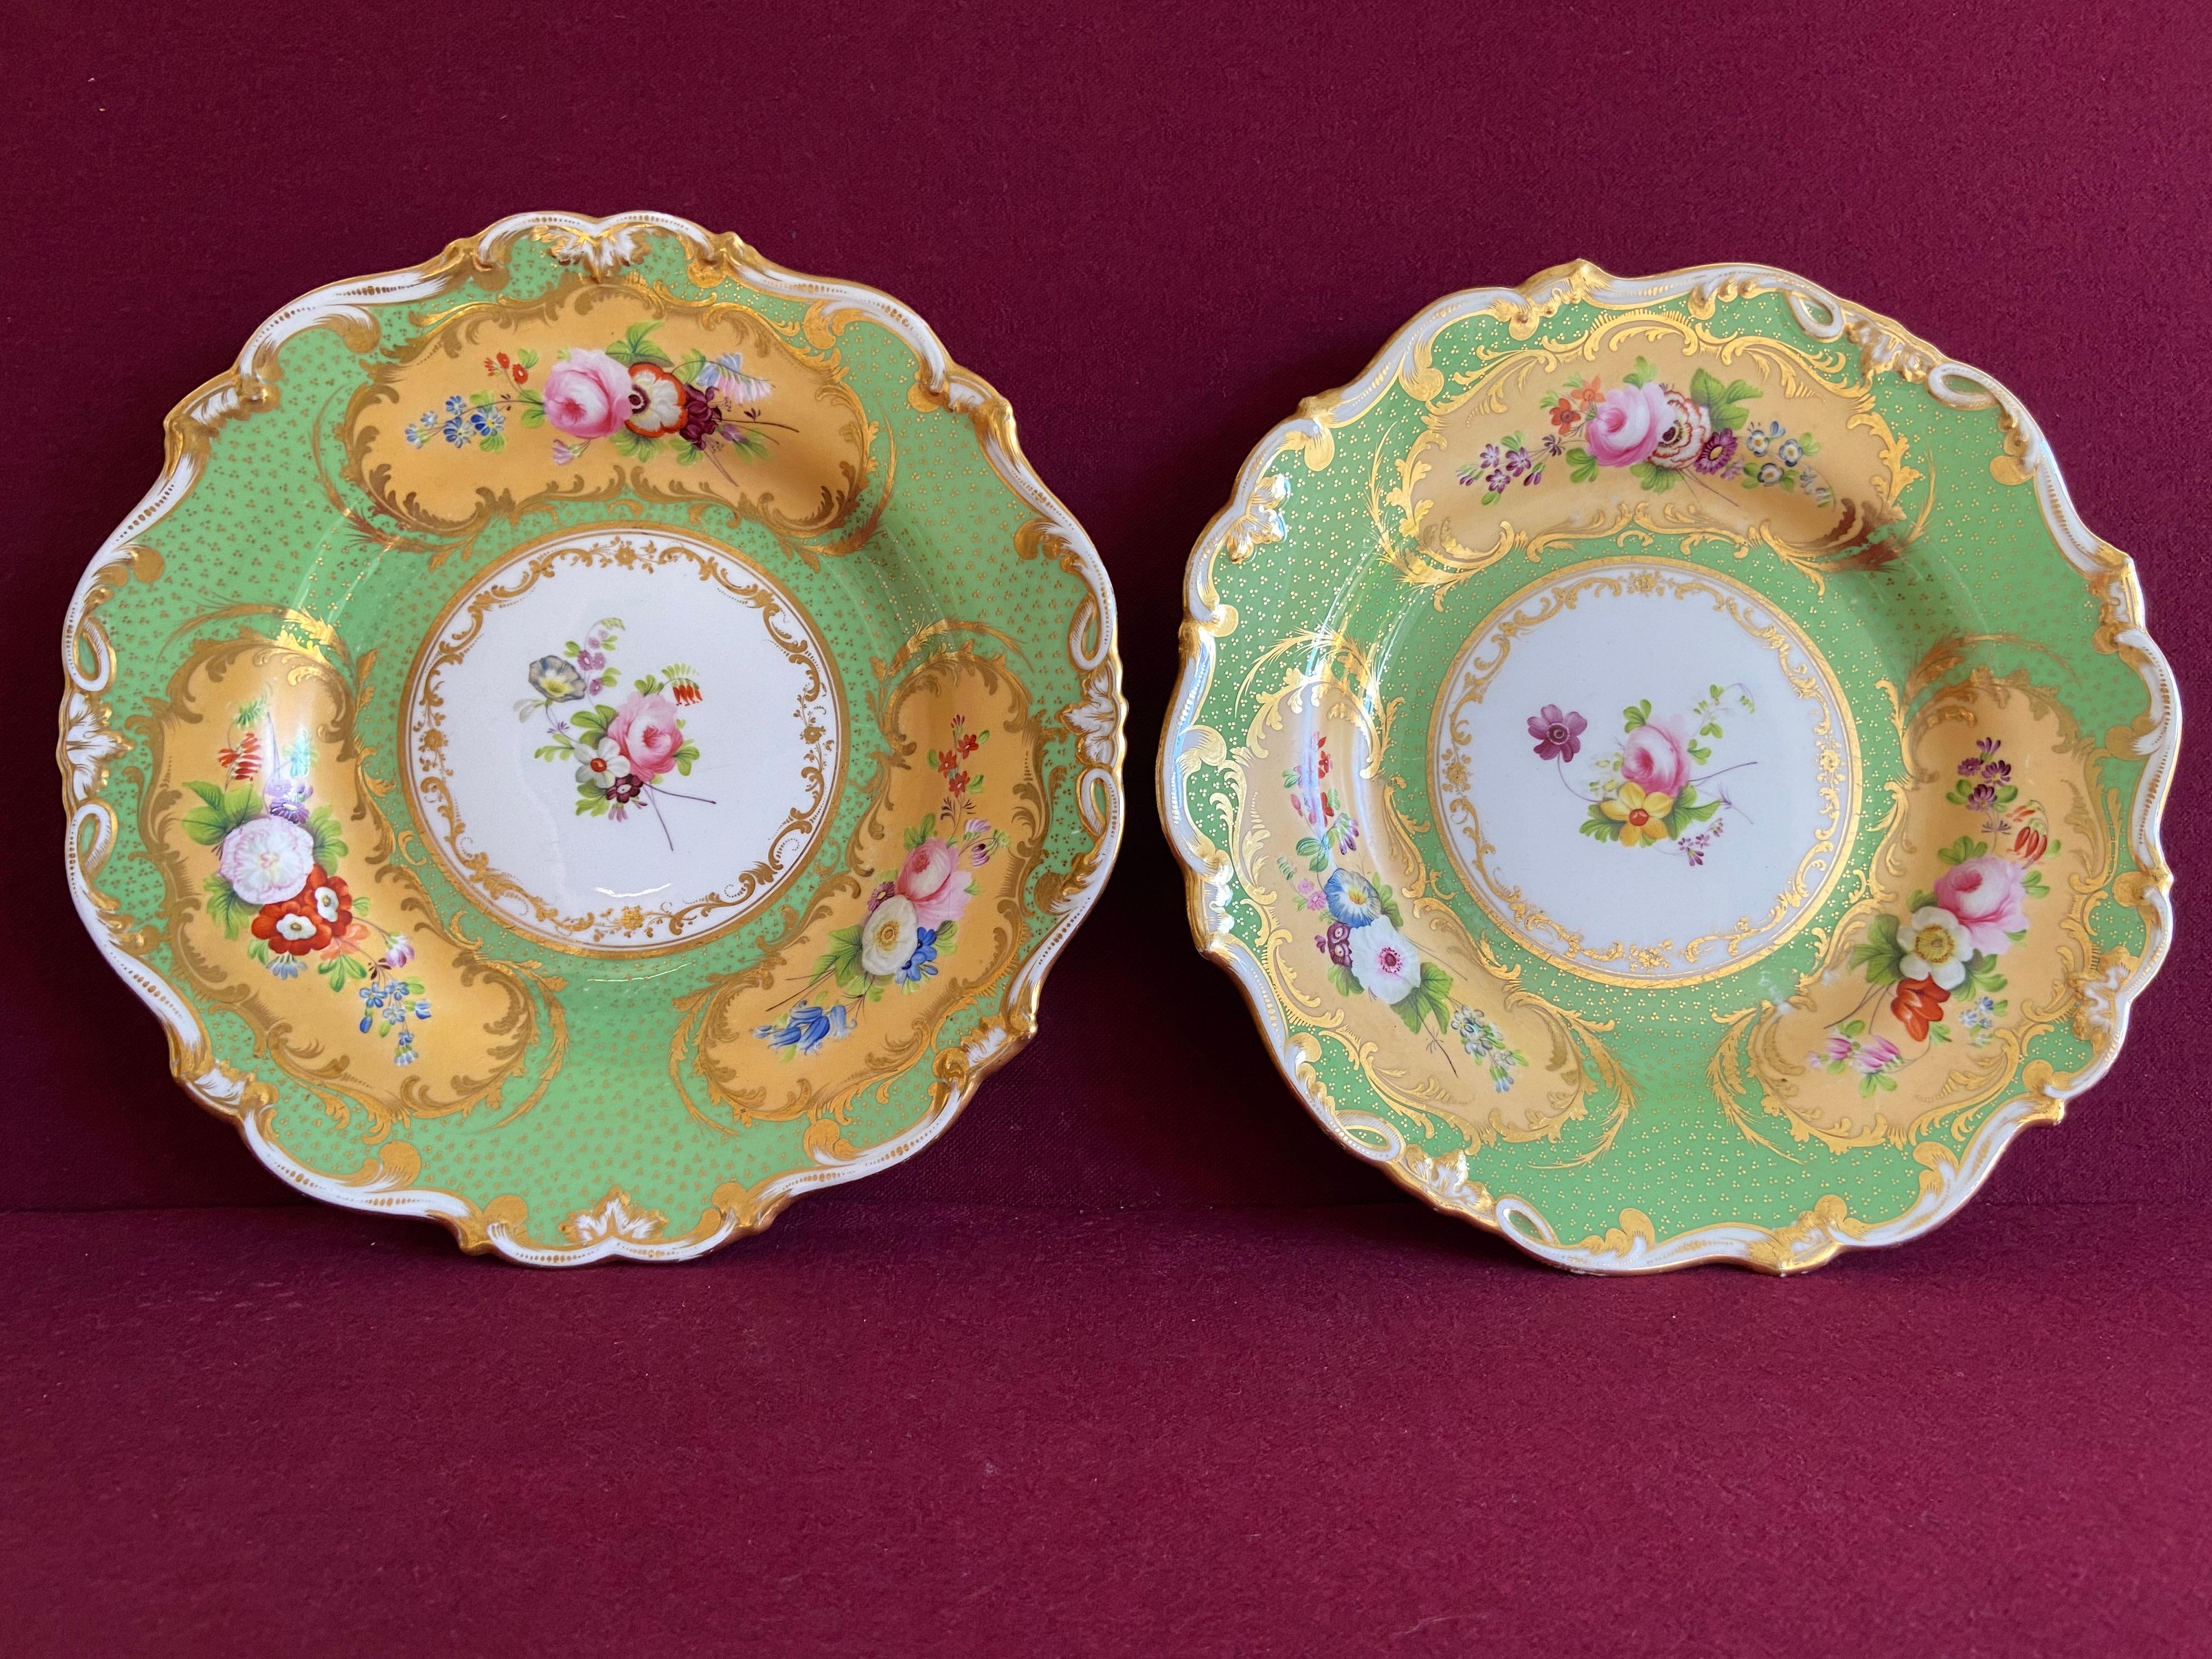 Une très belle paire d'assiettes à dessert en porcelaine de Minton vers 1835. Finement décoré de panneaux de fleurs sur un fond jaune dans une bordure verte. Marqué du numéro de modèle 3332.

Condition : Fissure capillaire sur la face inférieure